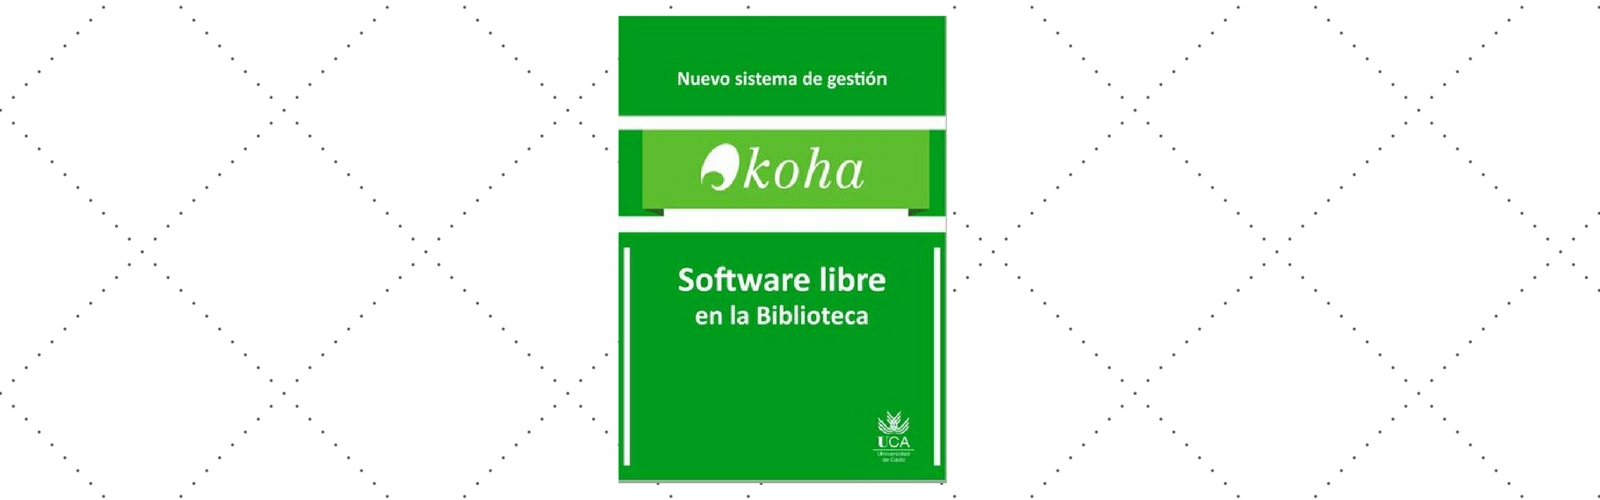 La Biblioteca de la UCA lanza el sistema de software libre "Koha"